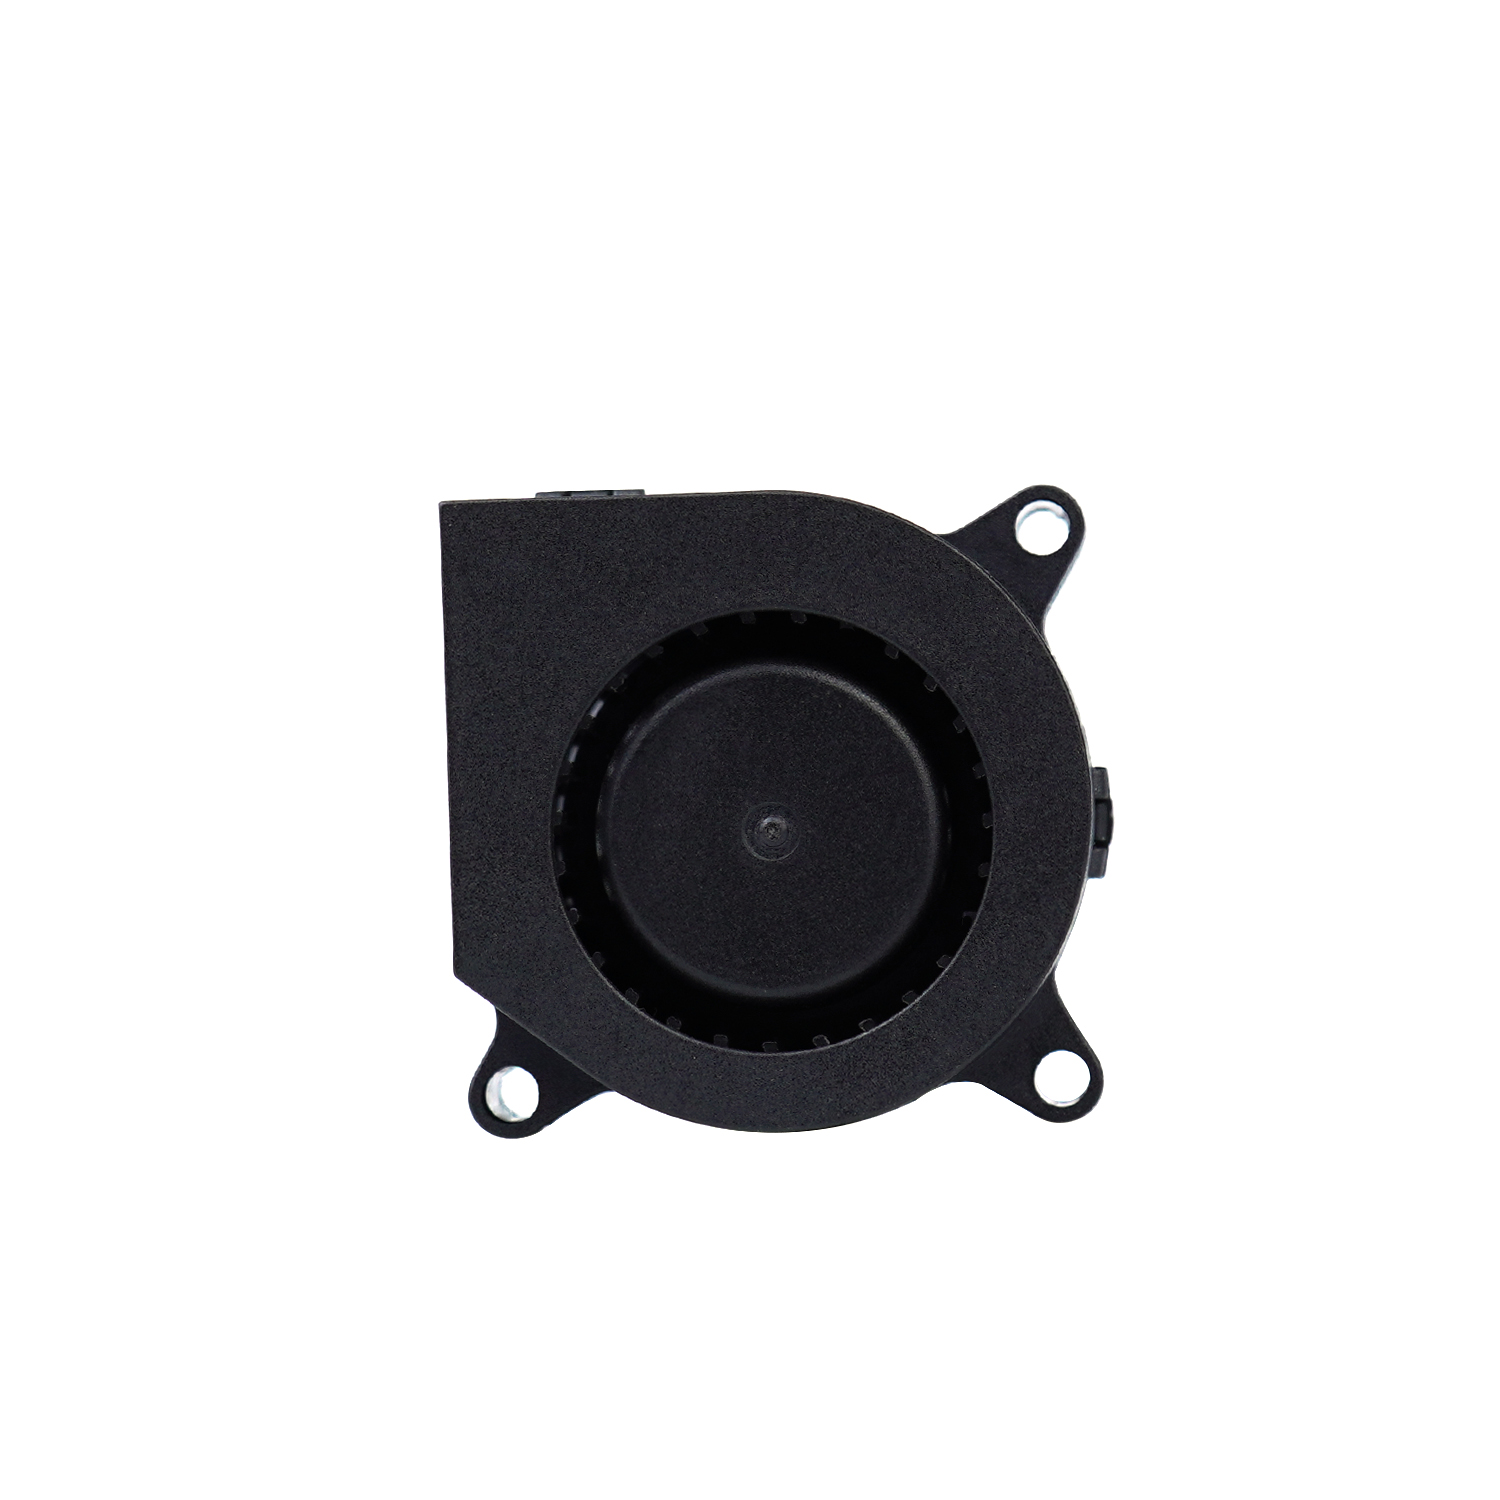 4020 40mm cooling fan 5v silent dc blower fan 